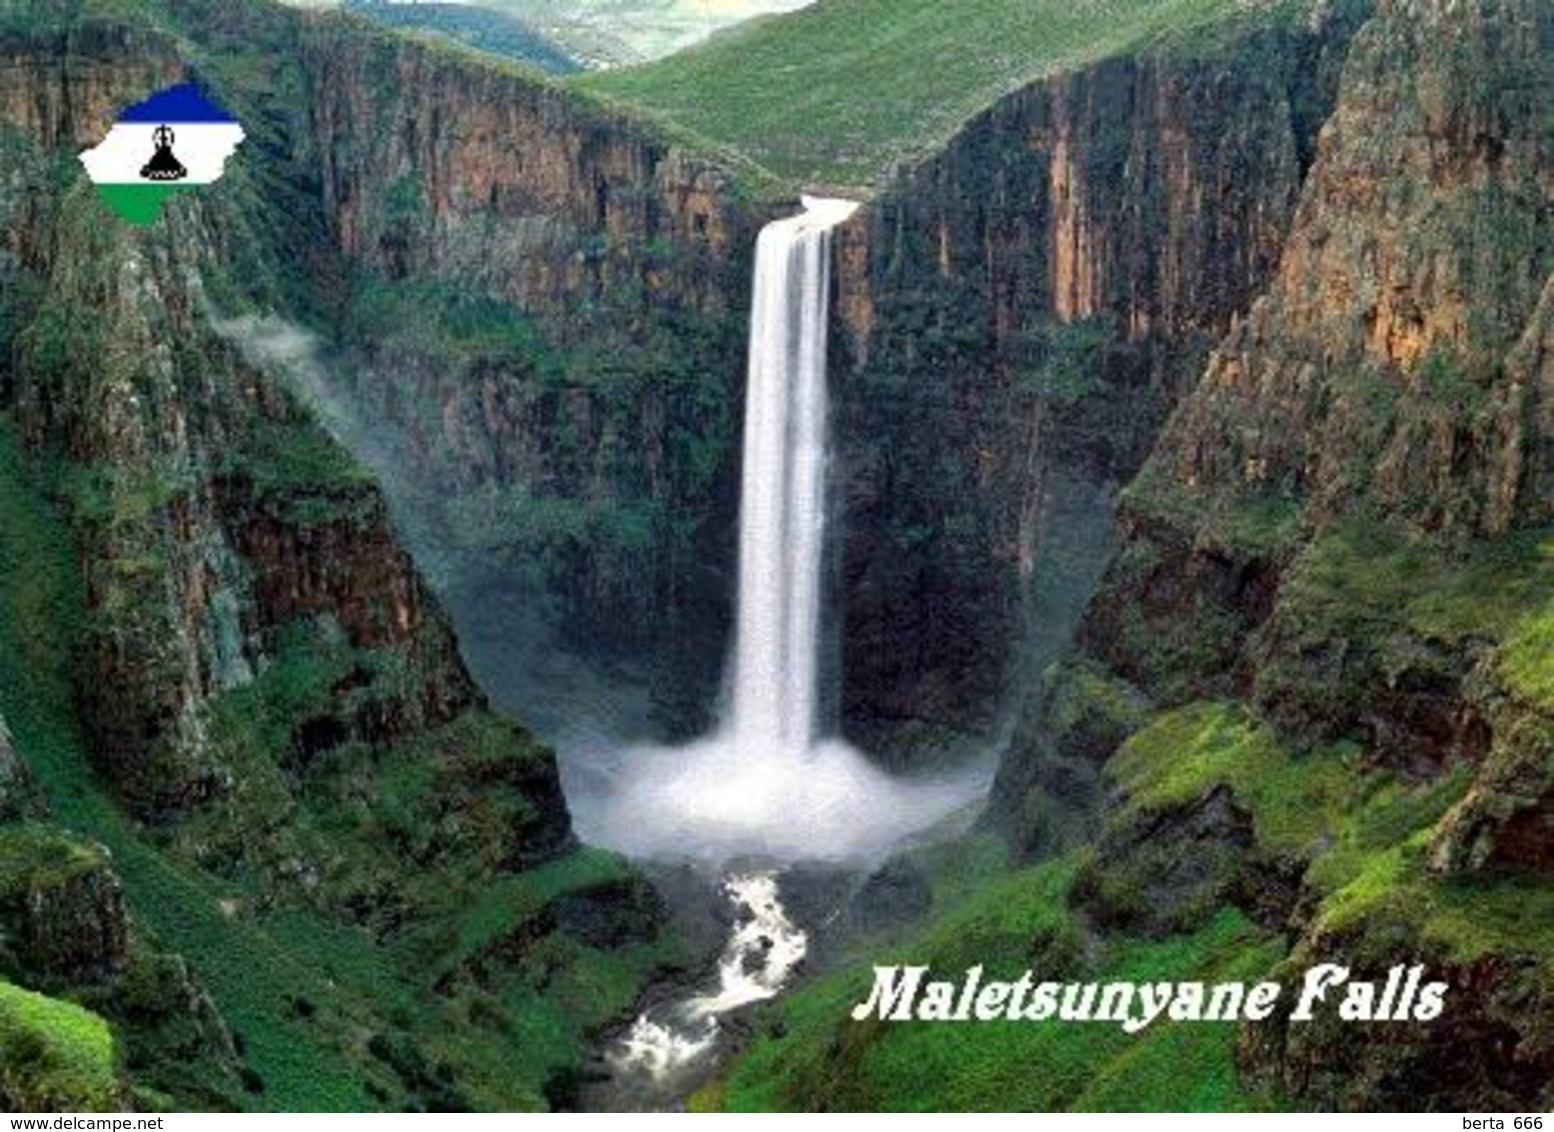 Lesotho Maletsunyane Falls New Postcard - Lesotho